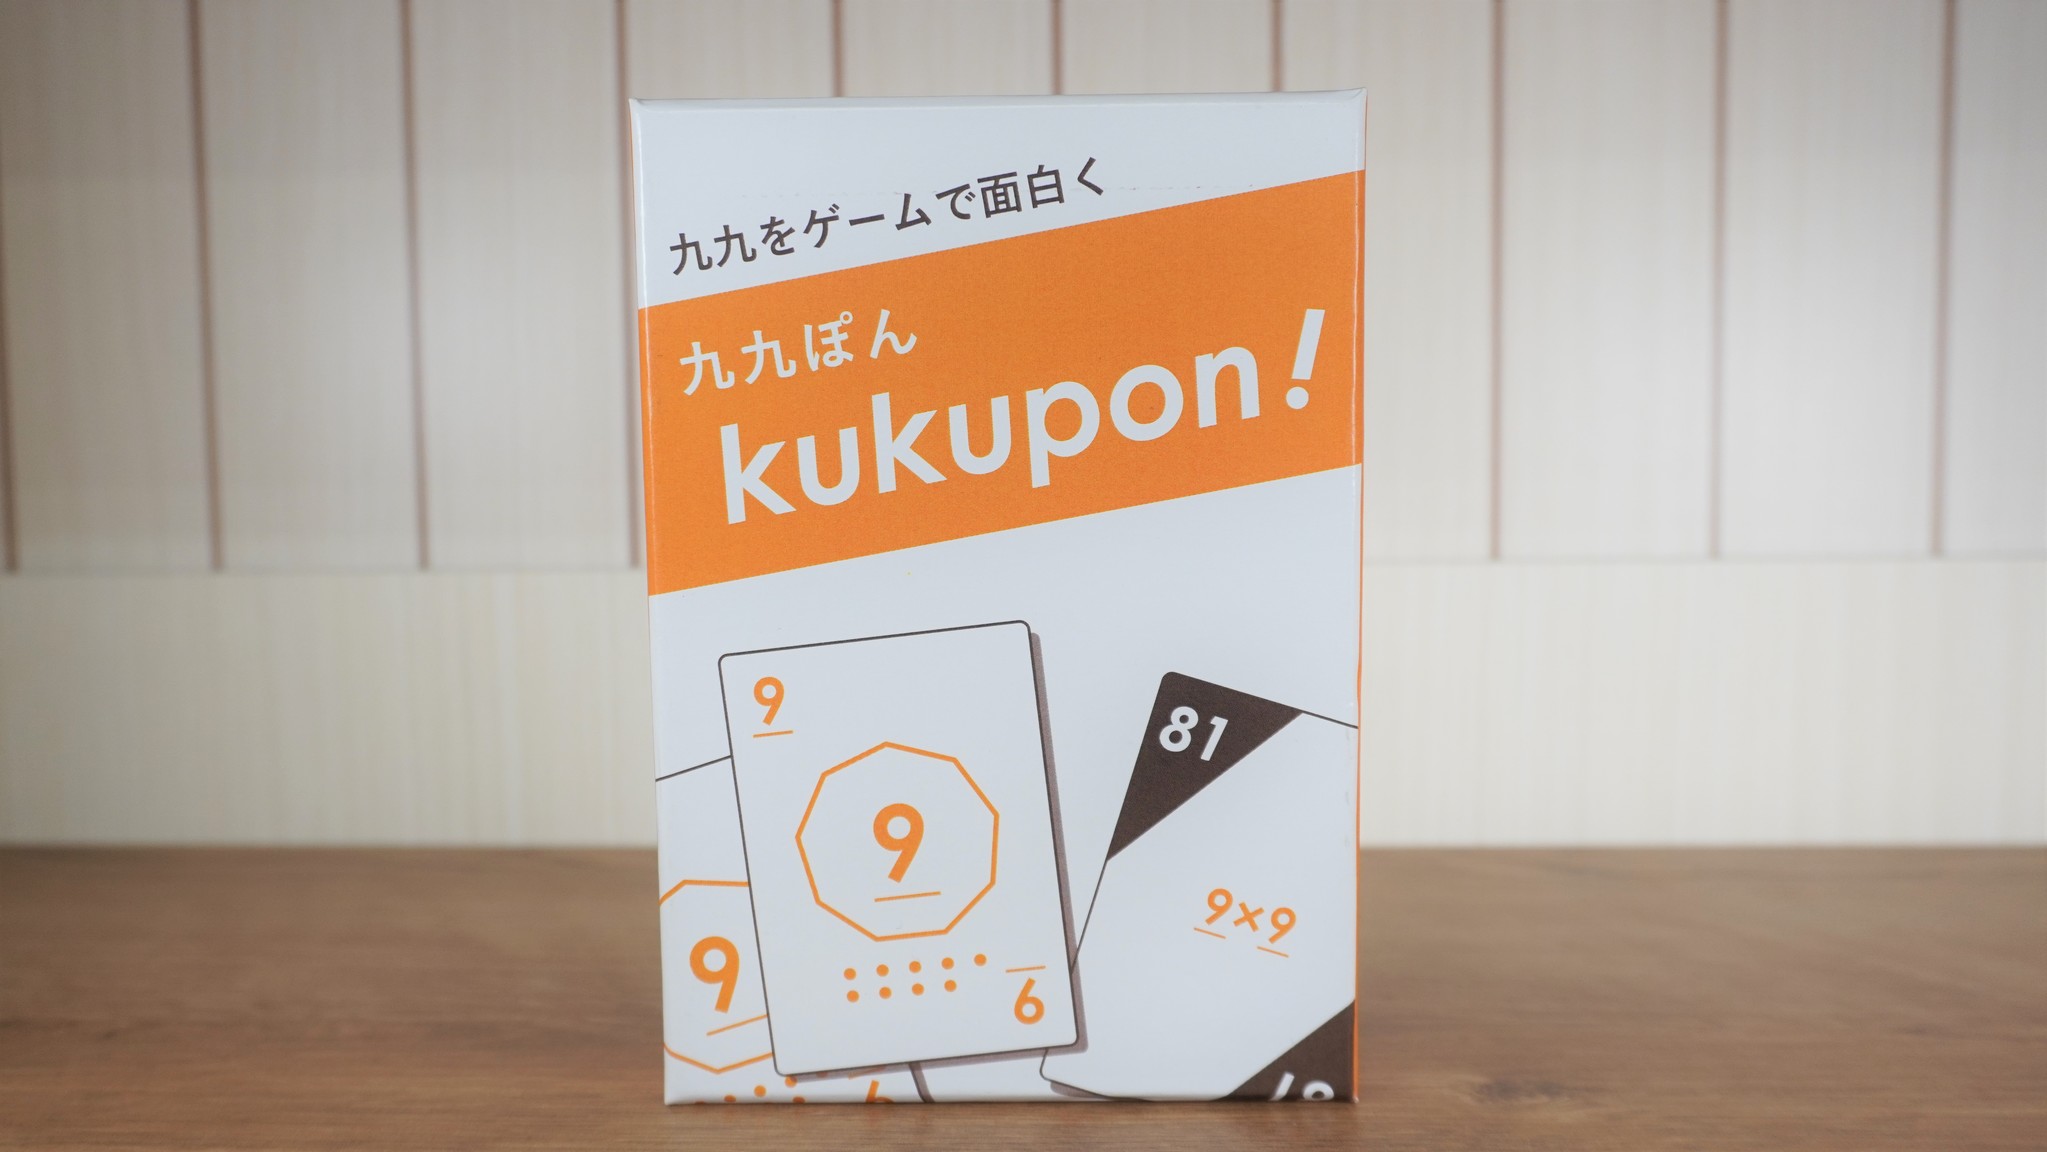 おうちで遊びながら学べる算数カードゲーム Kukupon くくぽん 新版 販売開始 いっしょに遊ぼう オンラインイベントも7 3 土 開催 株式会社 Math Channelのプレスリリース